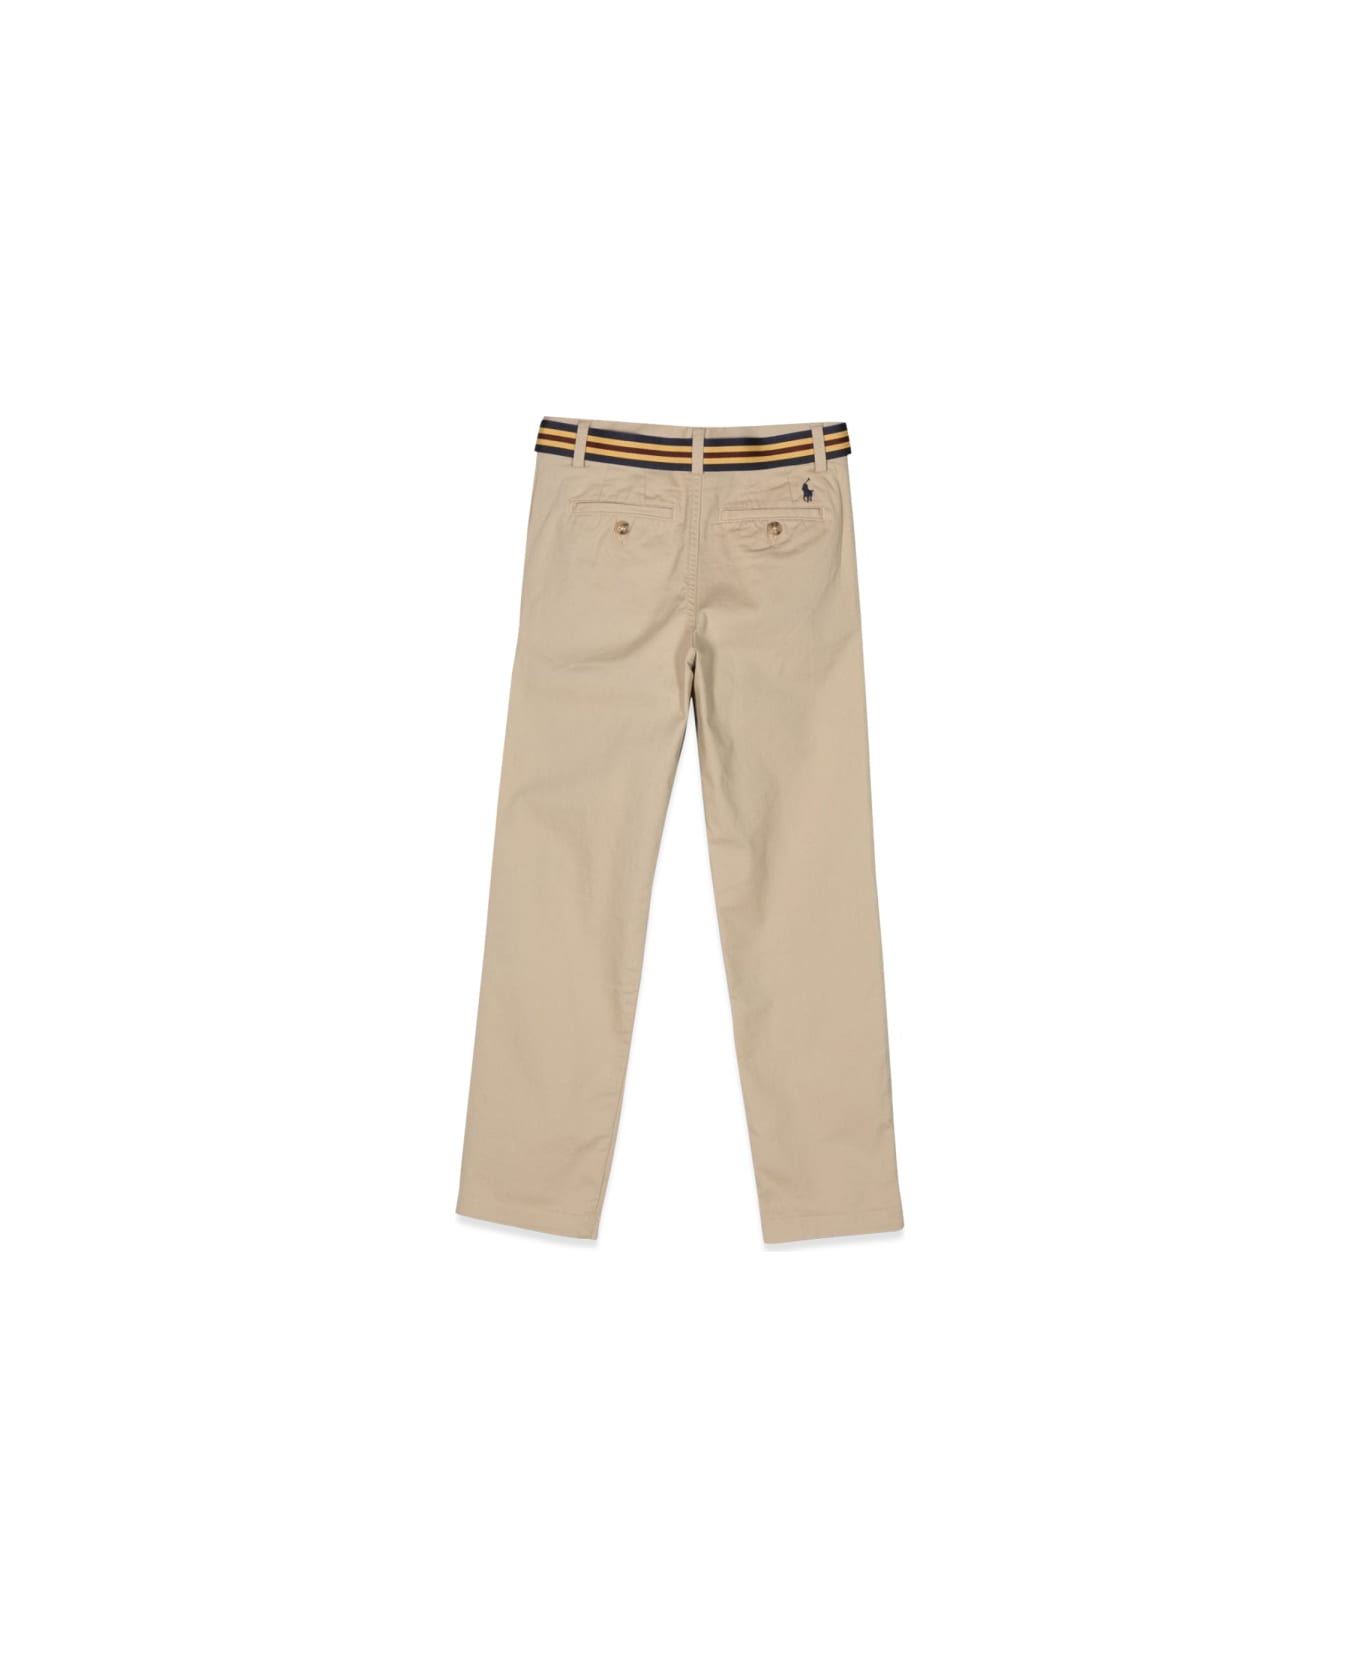 Polo Ralph Lauren Bedford Pants - BEIGE